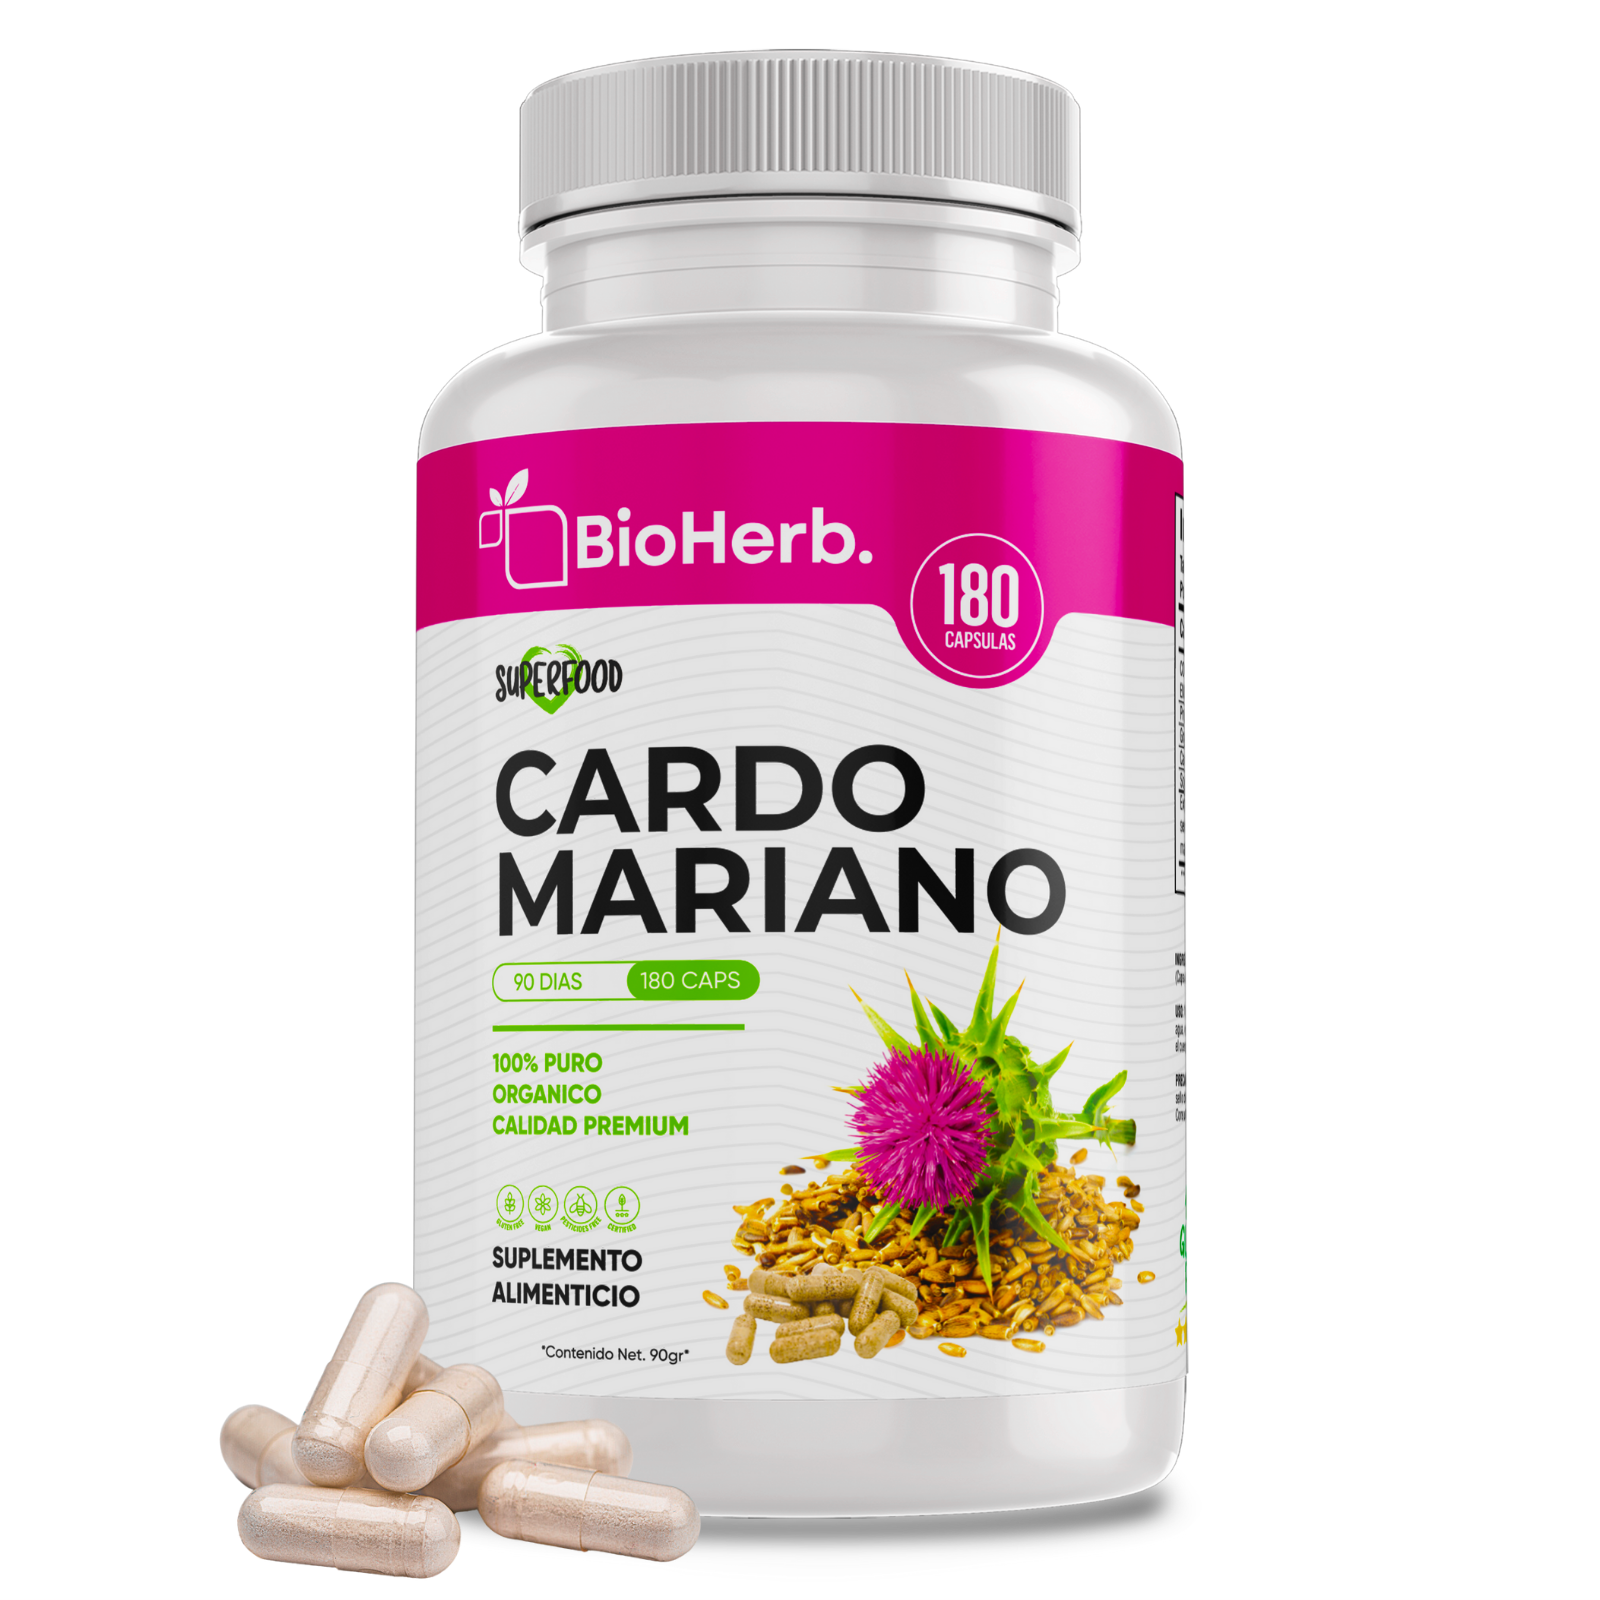 Cardo Mariano 100% Puro (180 Capsulas 500mg) |ORGANICO | NATURAL | Para 90  Dias | - Milk Thistle